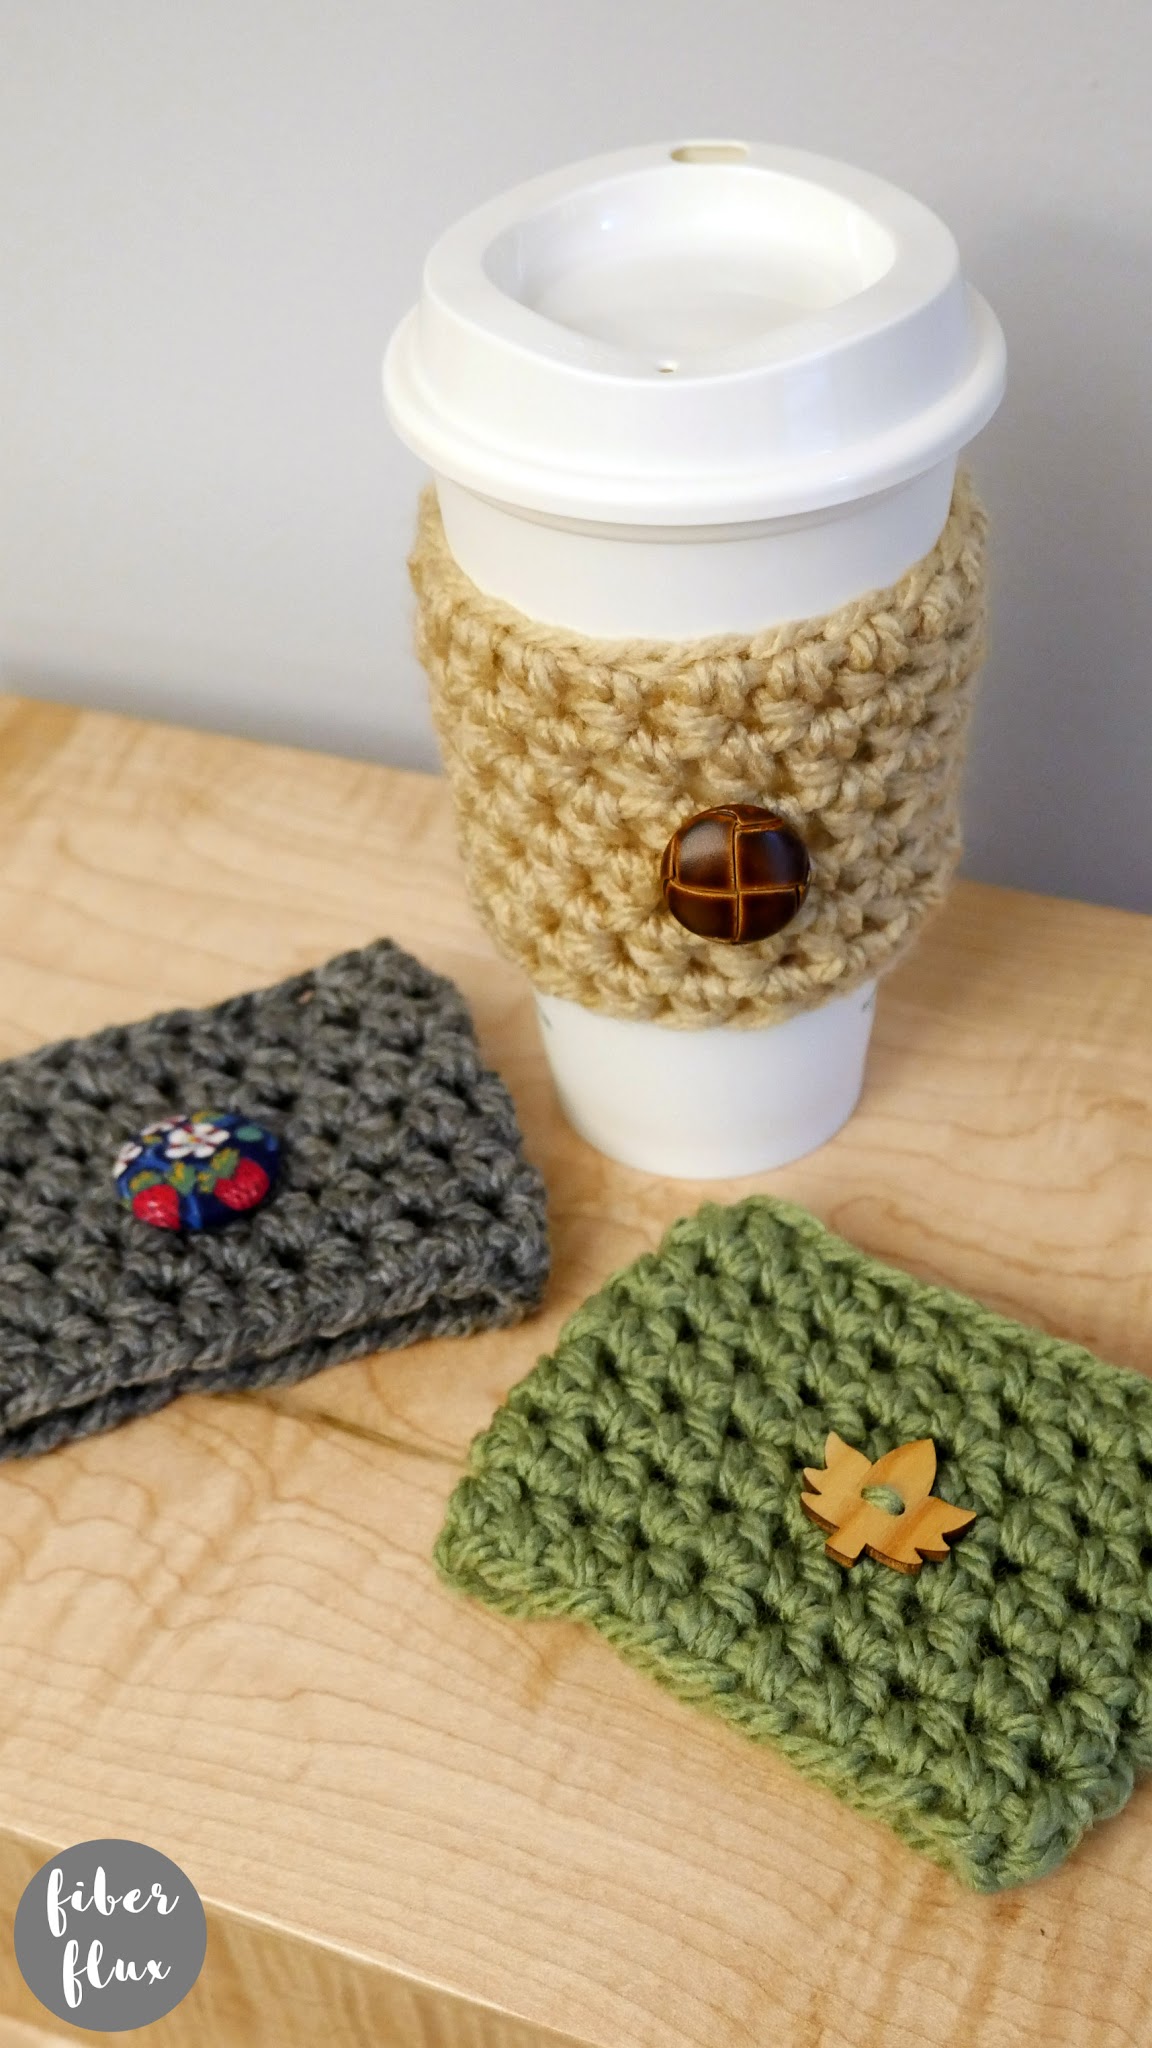 Quick Gift Crochet Coffee Cozy